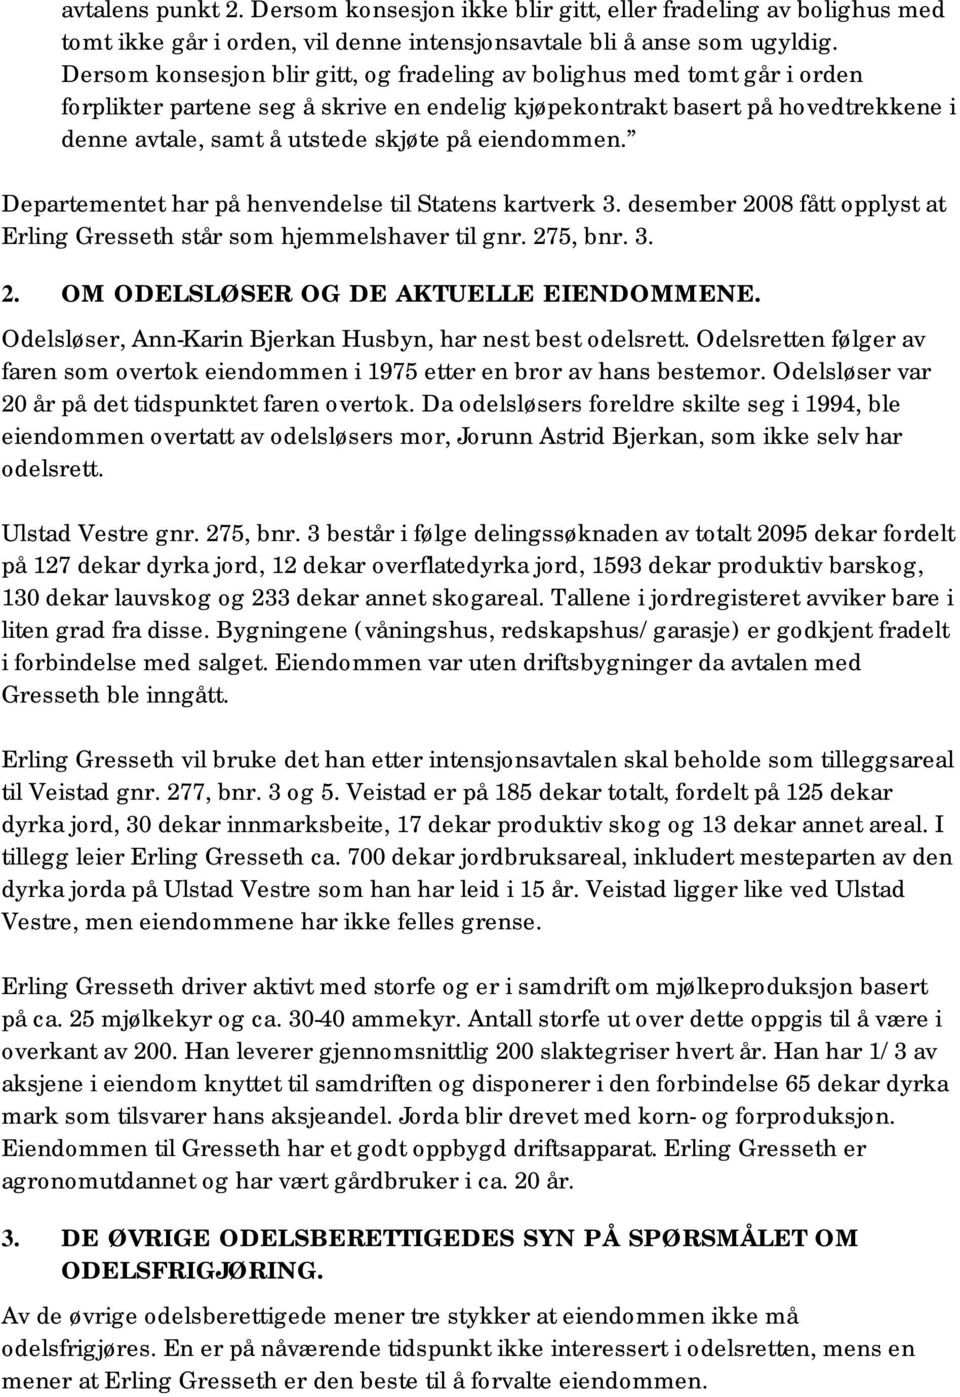 eiendommen. Departementet har på henvendelse til Statens kartverk 3. desember 2008 fått opplyst at Erling Gresseth står som hjemmelshaver til gnr. 275, bnr. 3. 2. OM ODELSLØSER OG DE AKTUELLE EIENDOMMENE.